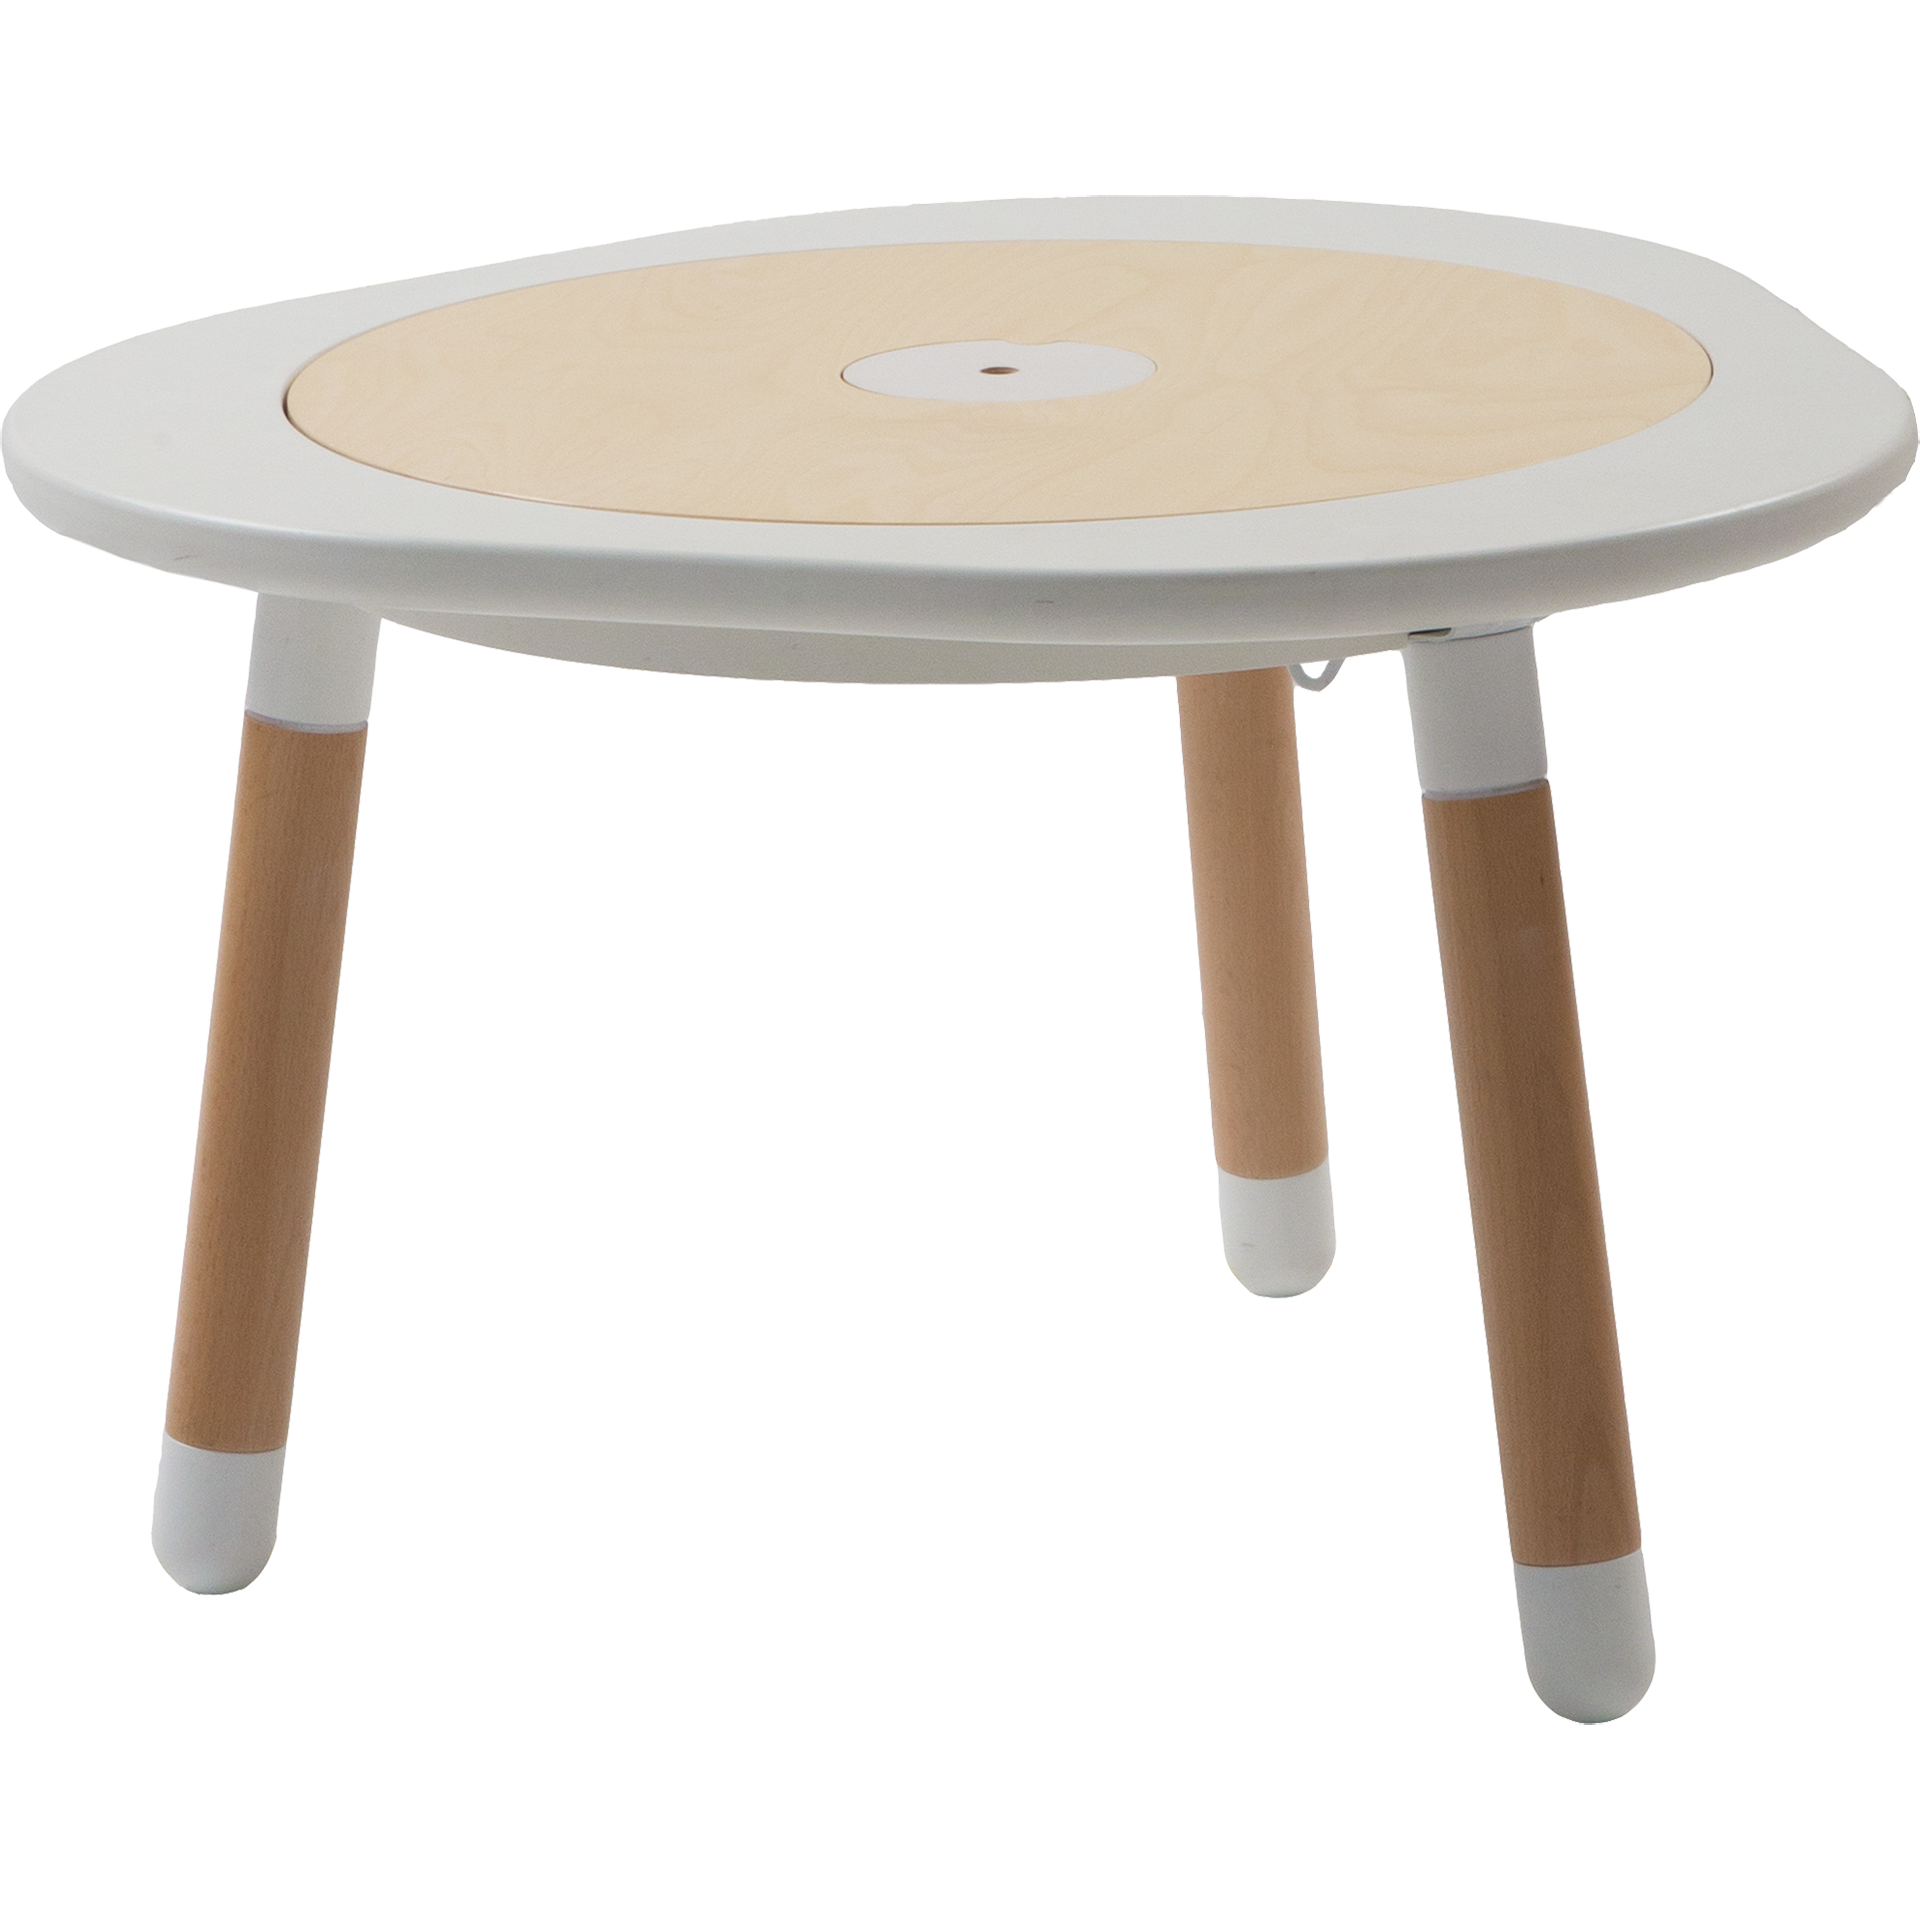 playdough clipart table